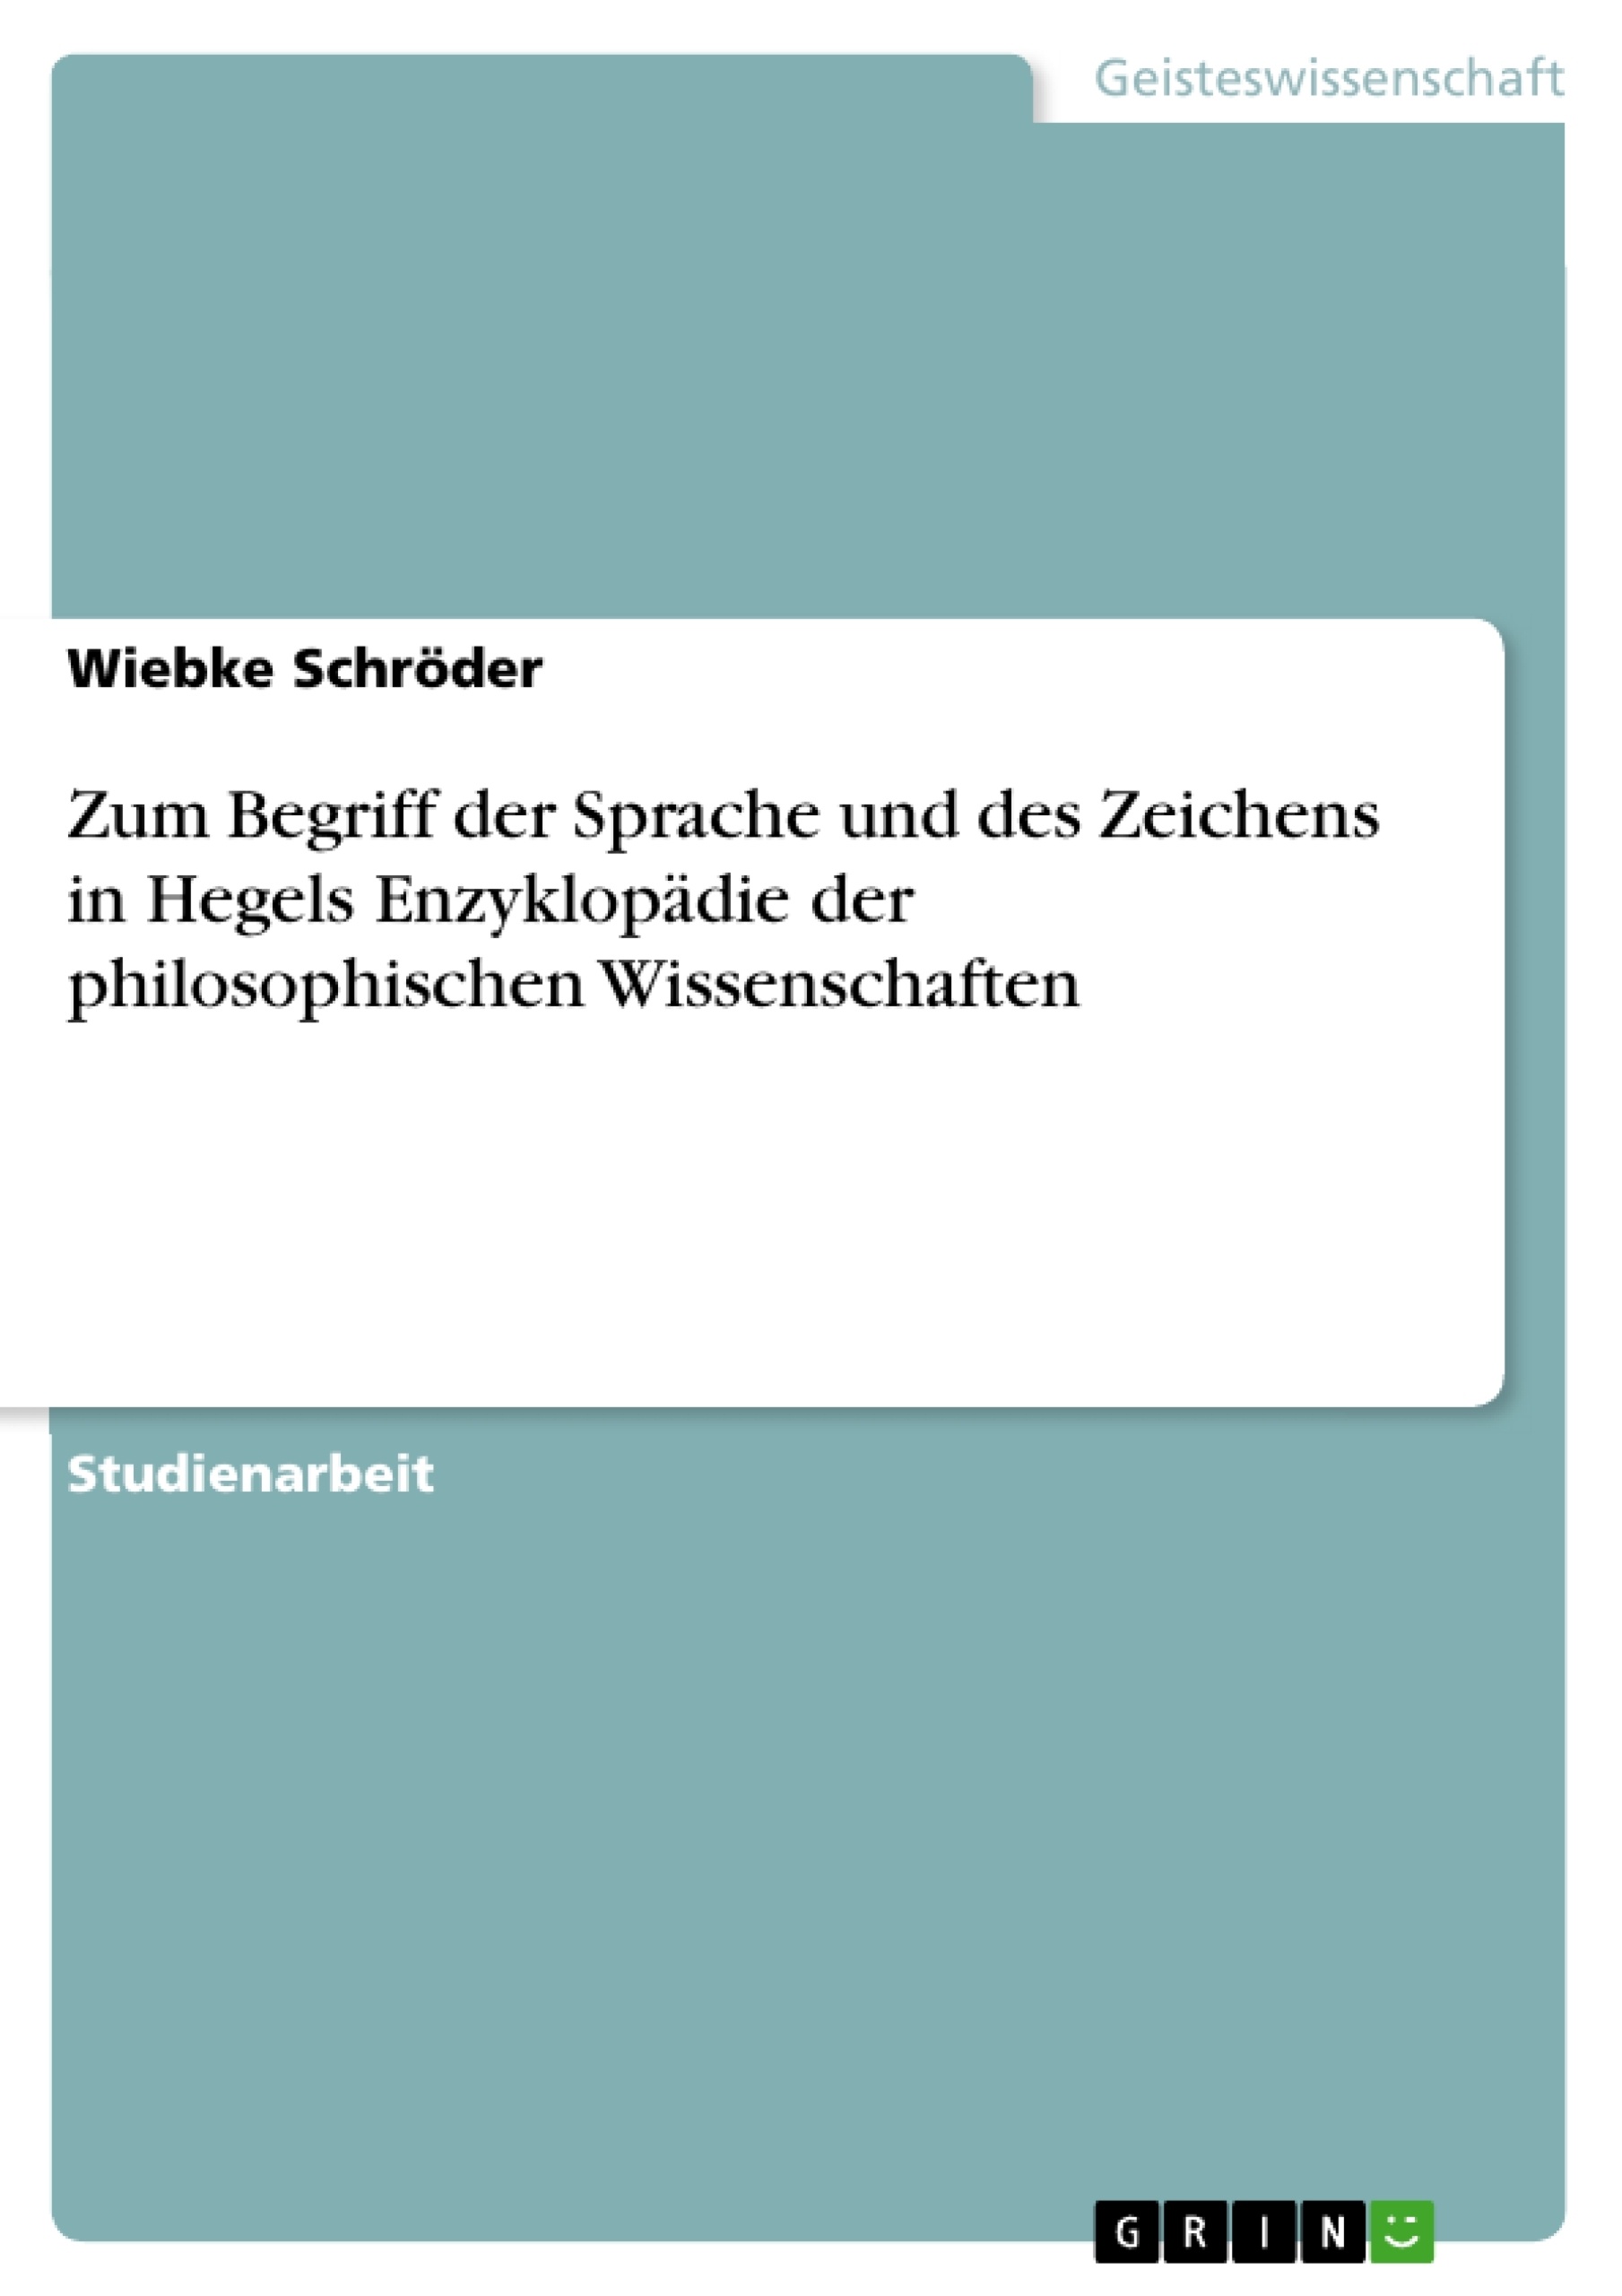 Título: Zum Begriff der Sprache und des Zeichens in Hegels Enzyklopädie der philosophischen Wissenschaften 